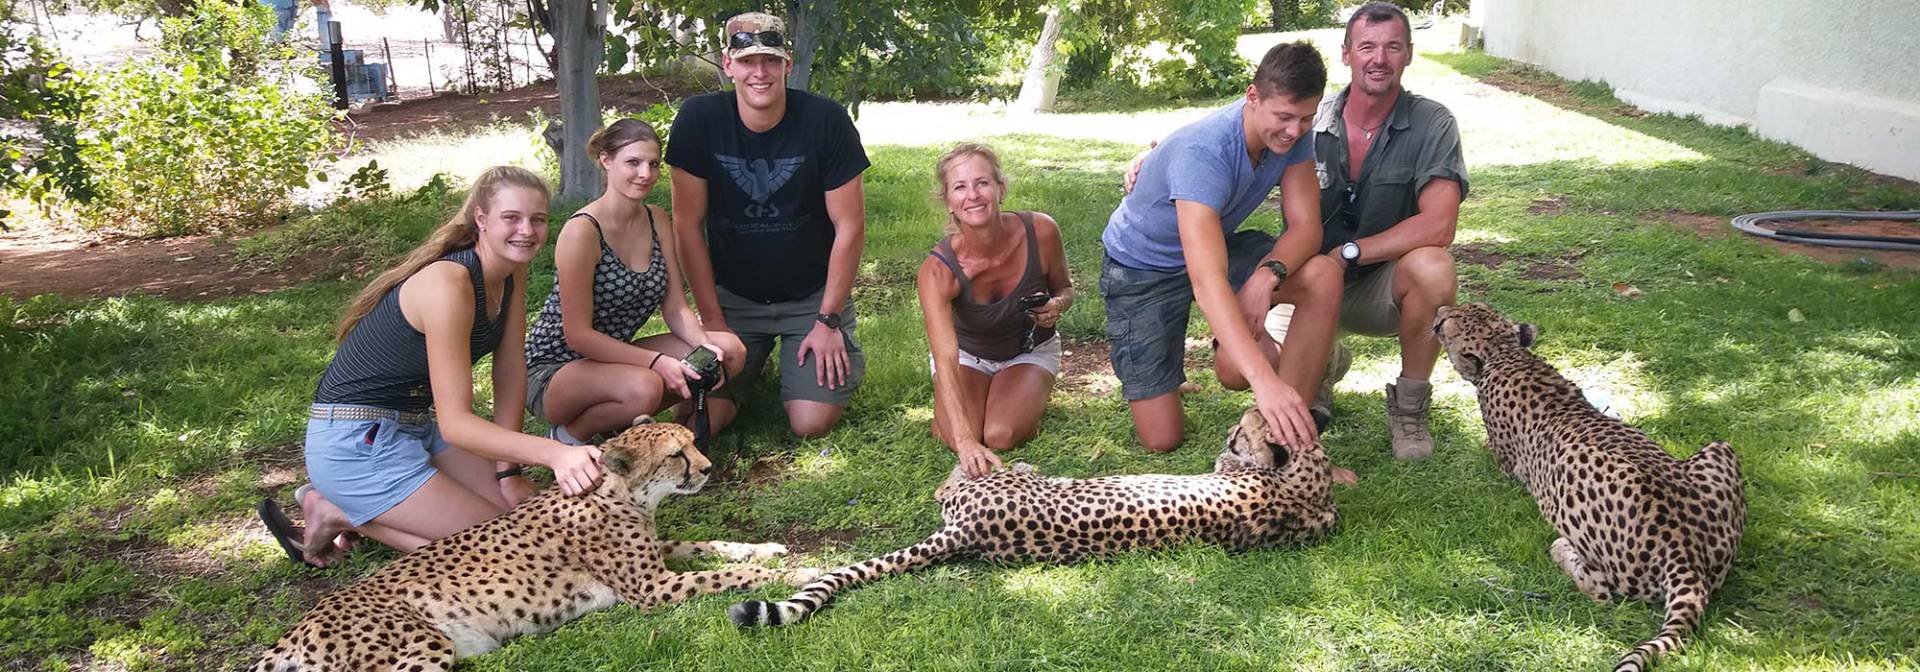 Gepardenprojektbesuch auf einer Familienreise durch Namibia